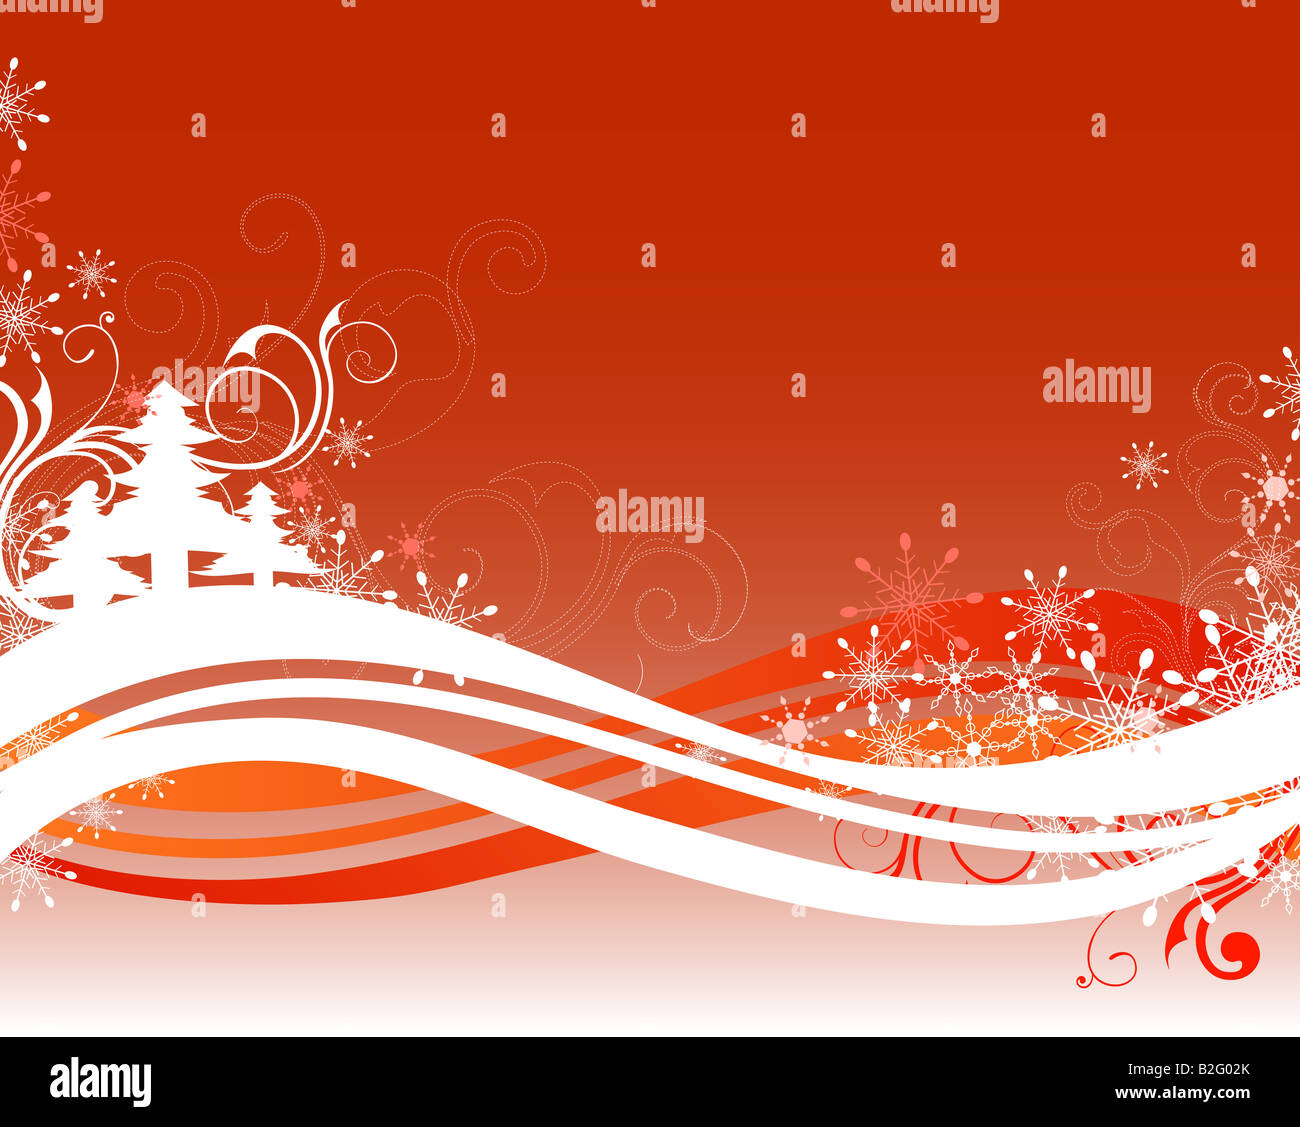 Abbildung von Weihnachten Hintergrund zeichnen Stockfoto